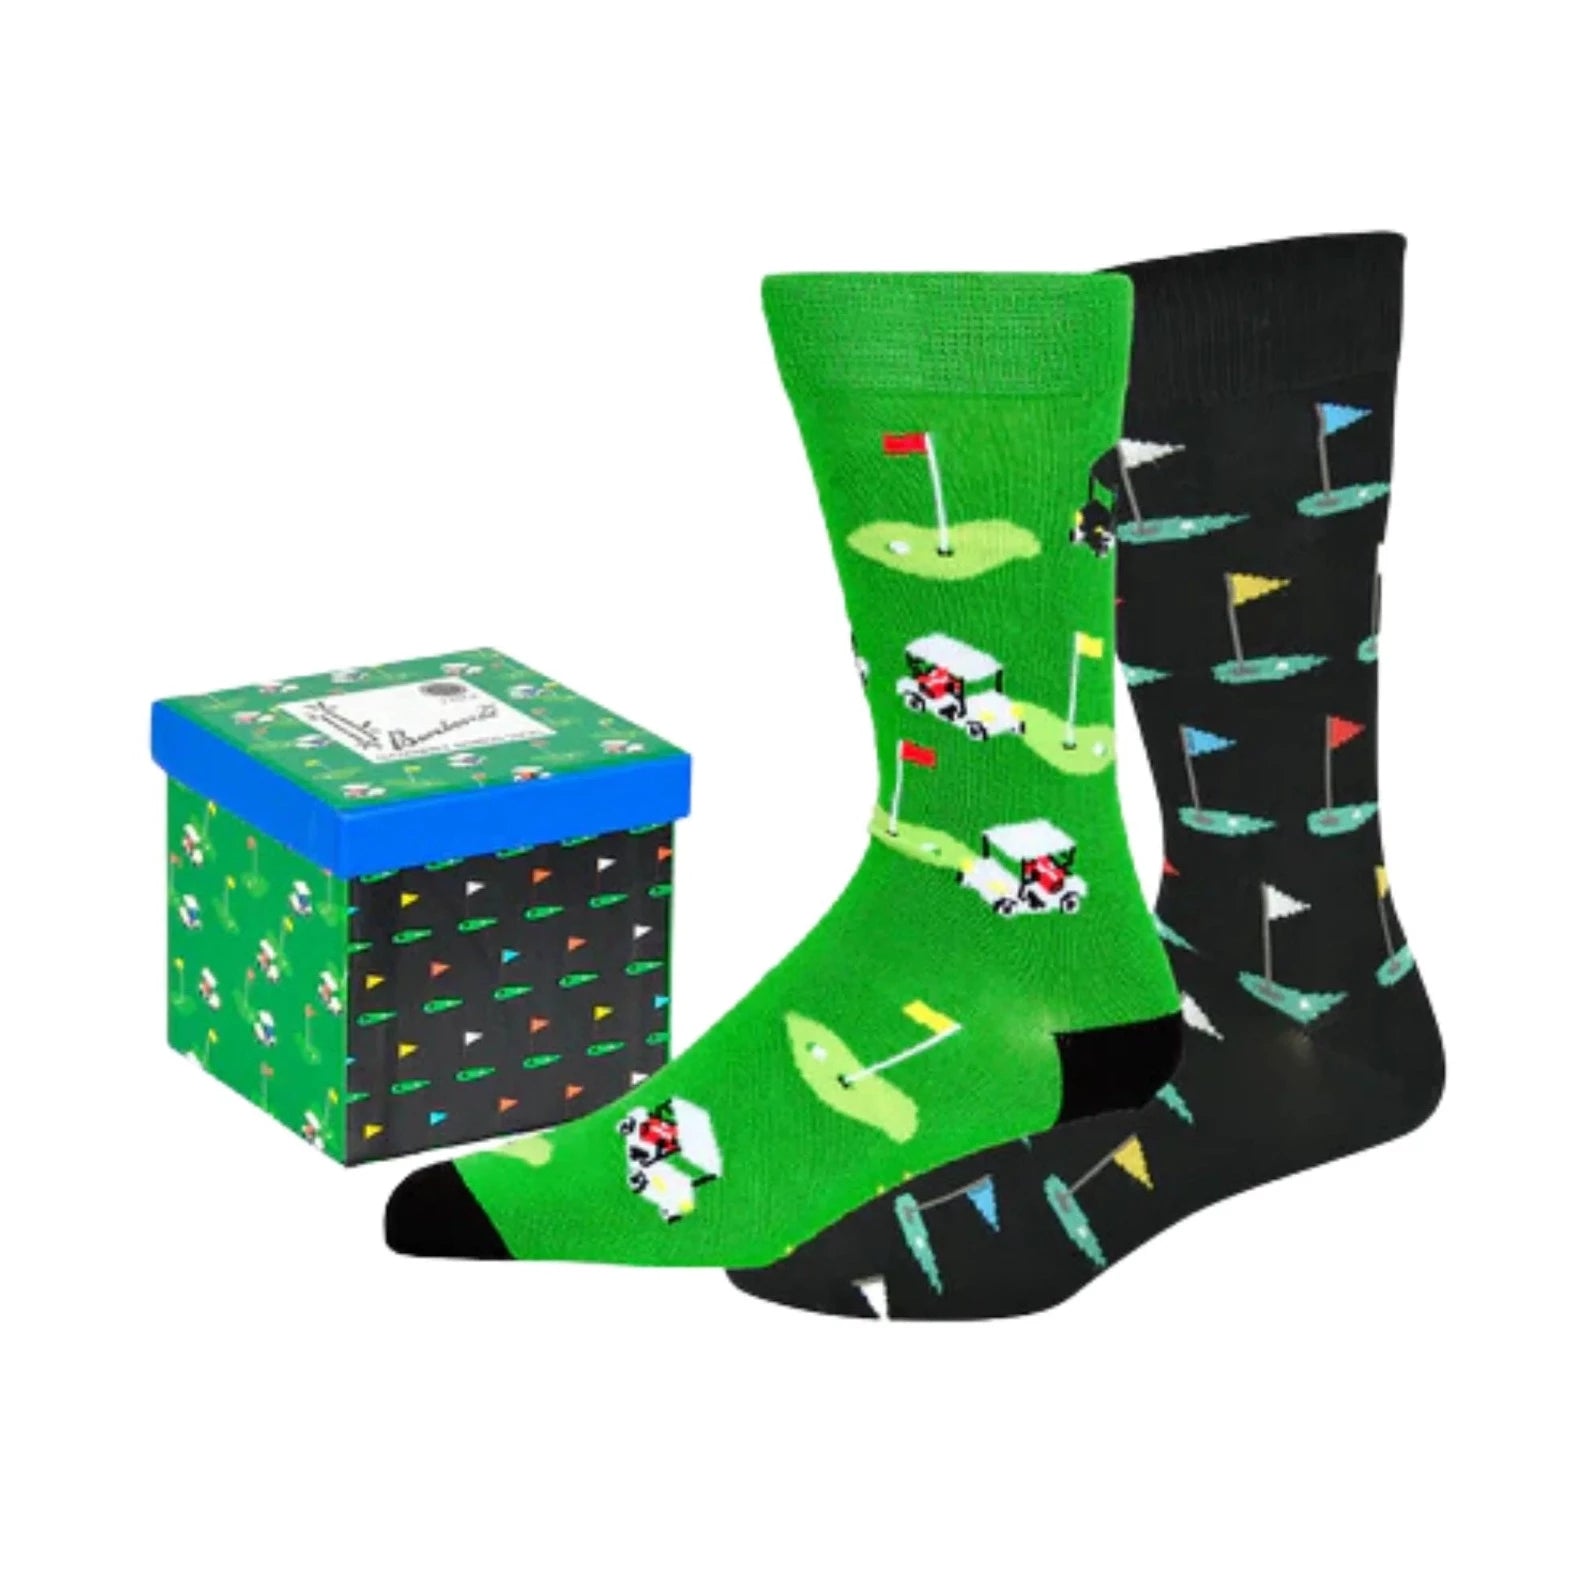 Boxed Gift Set - Golf Green Men's Crew Socks 2 Pack